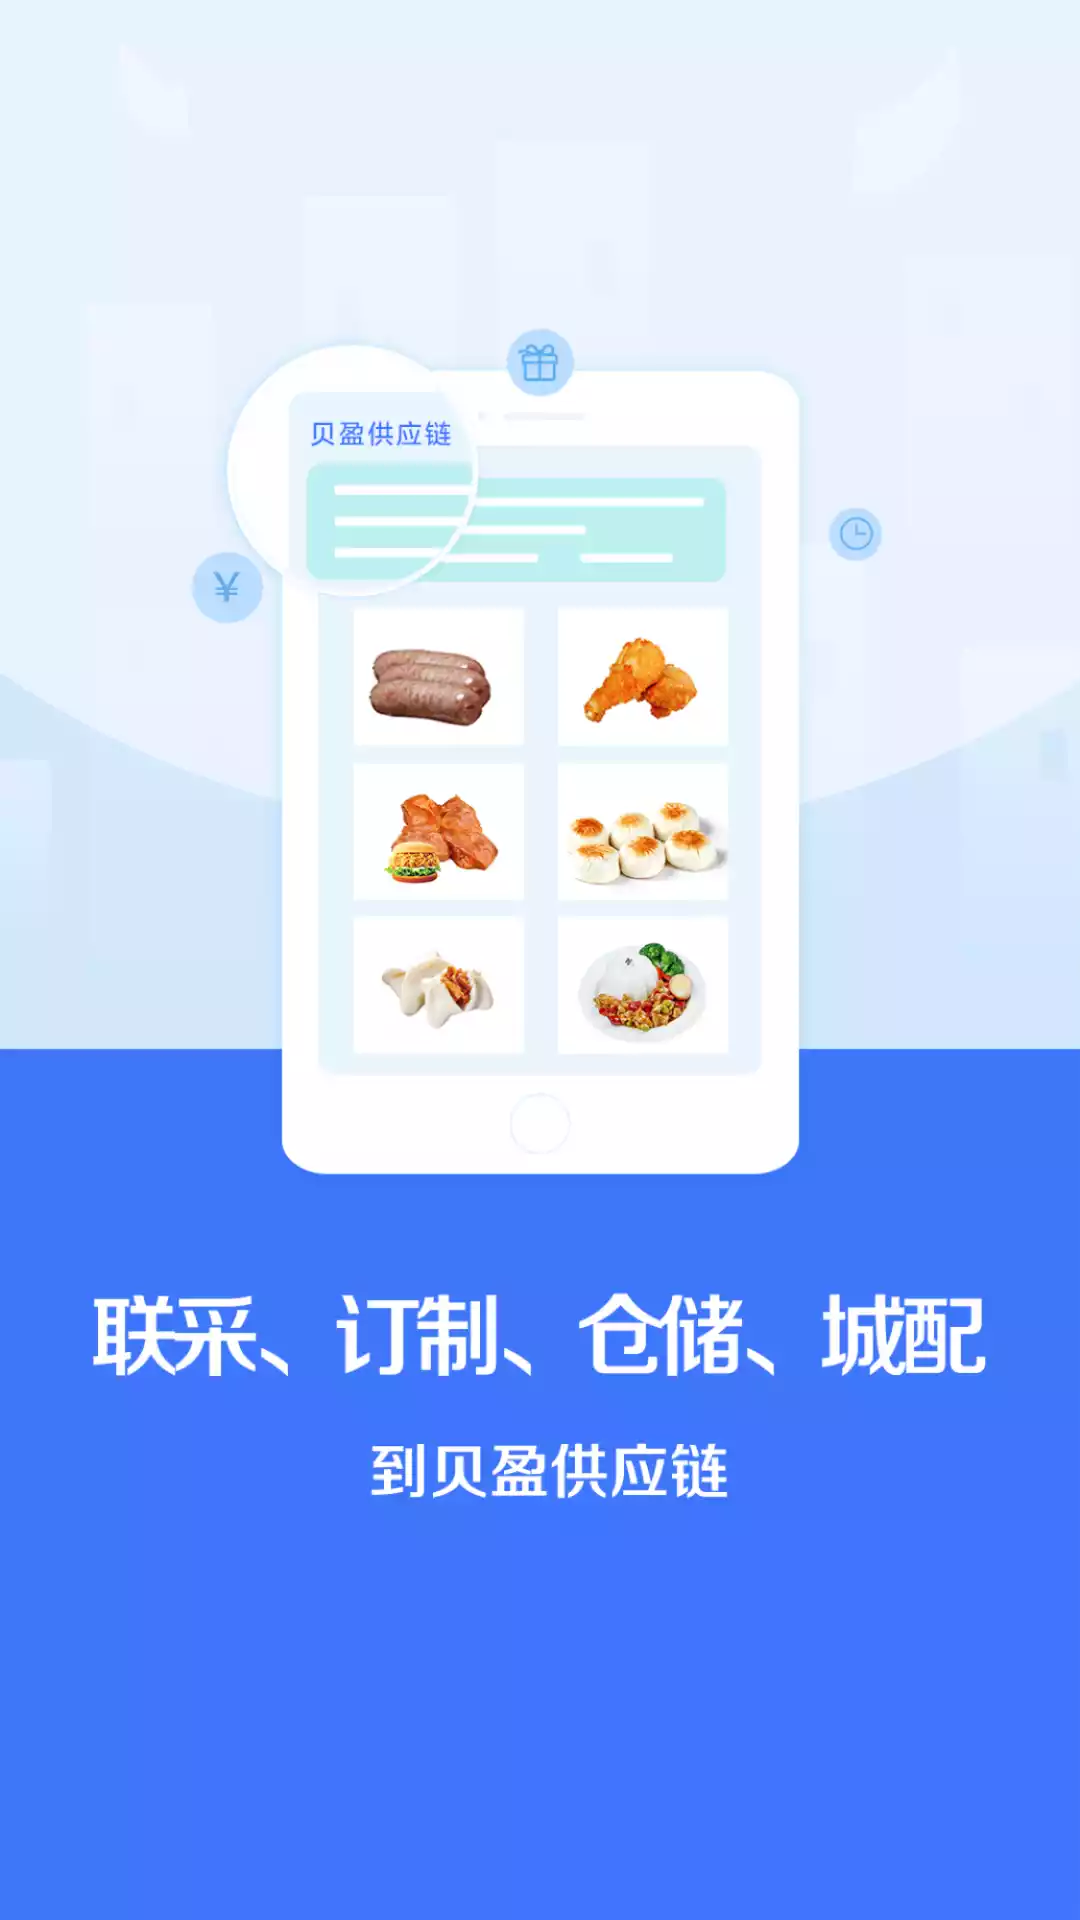 中国食材供应链服务平台 截图